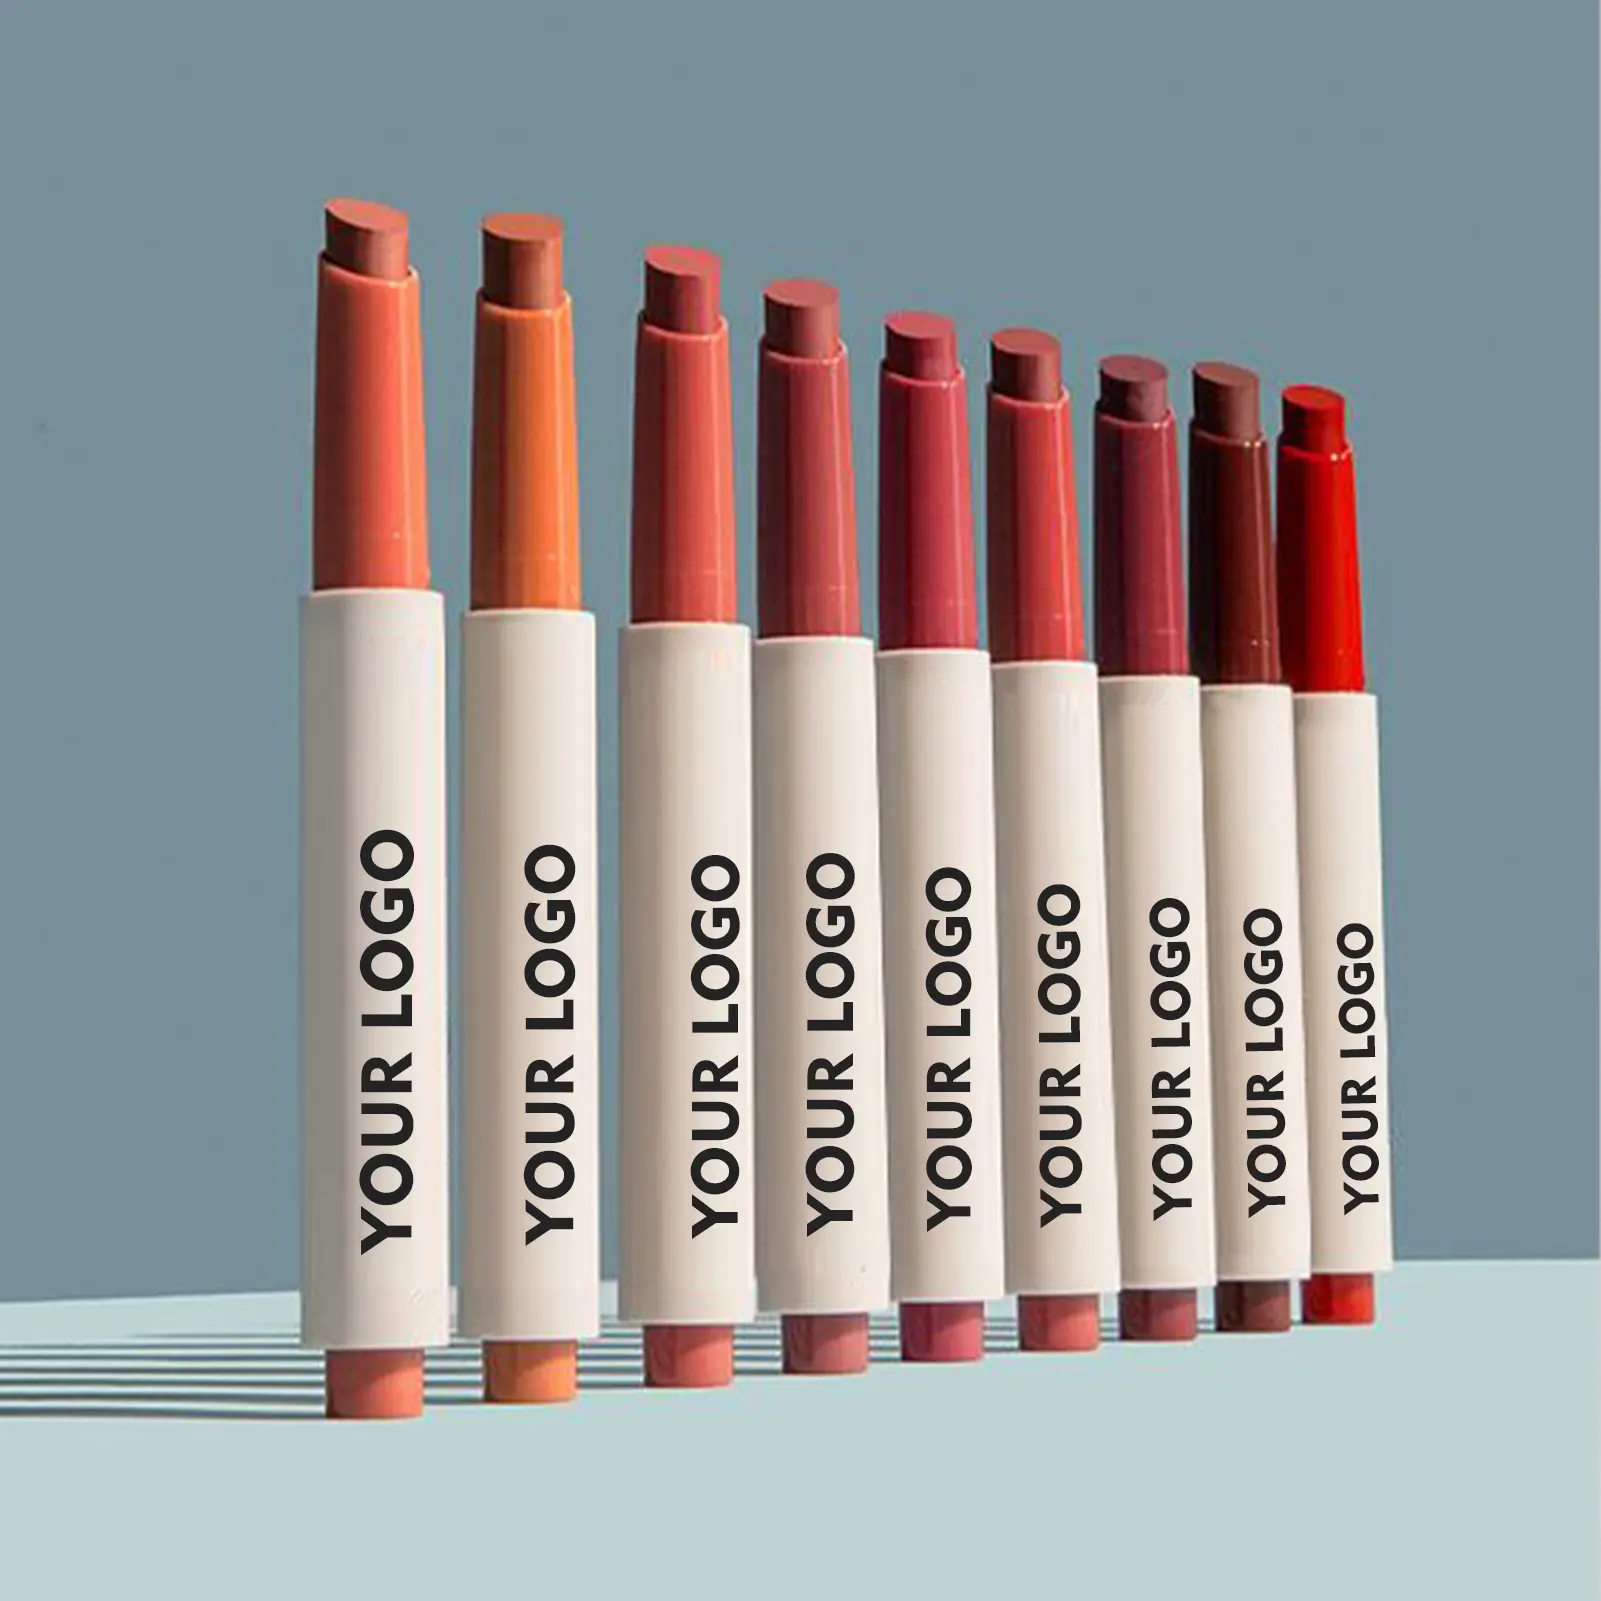 Ruj kalem ambalaj özel, özel Logo yüksek kalite ruj 24 renkler zulüm ücretsiz olmayan yapışkan çıplak mat uzun ömürlü